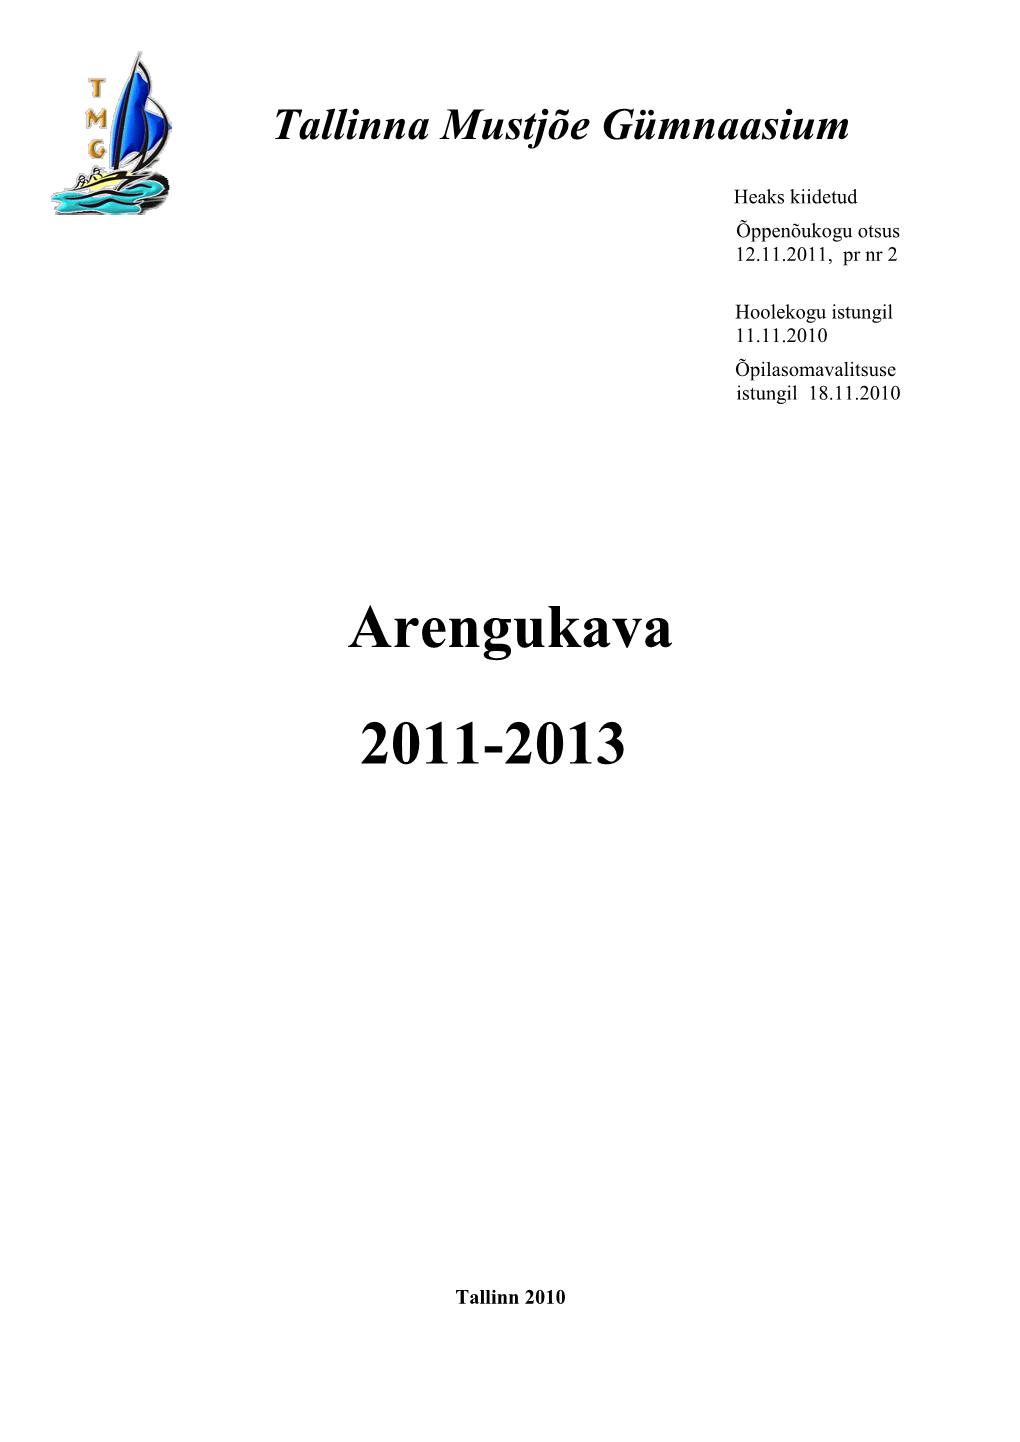 Arengukava 2011-2013